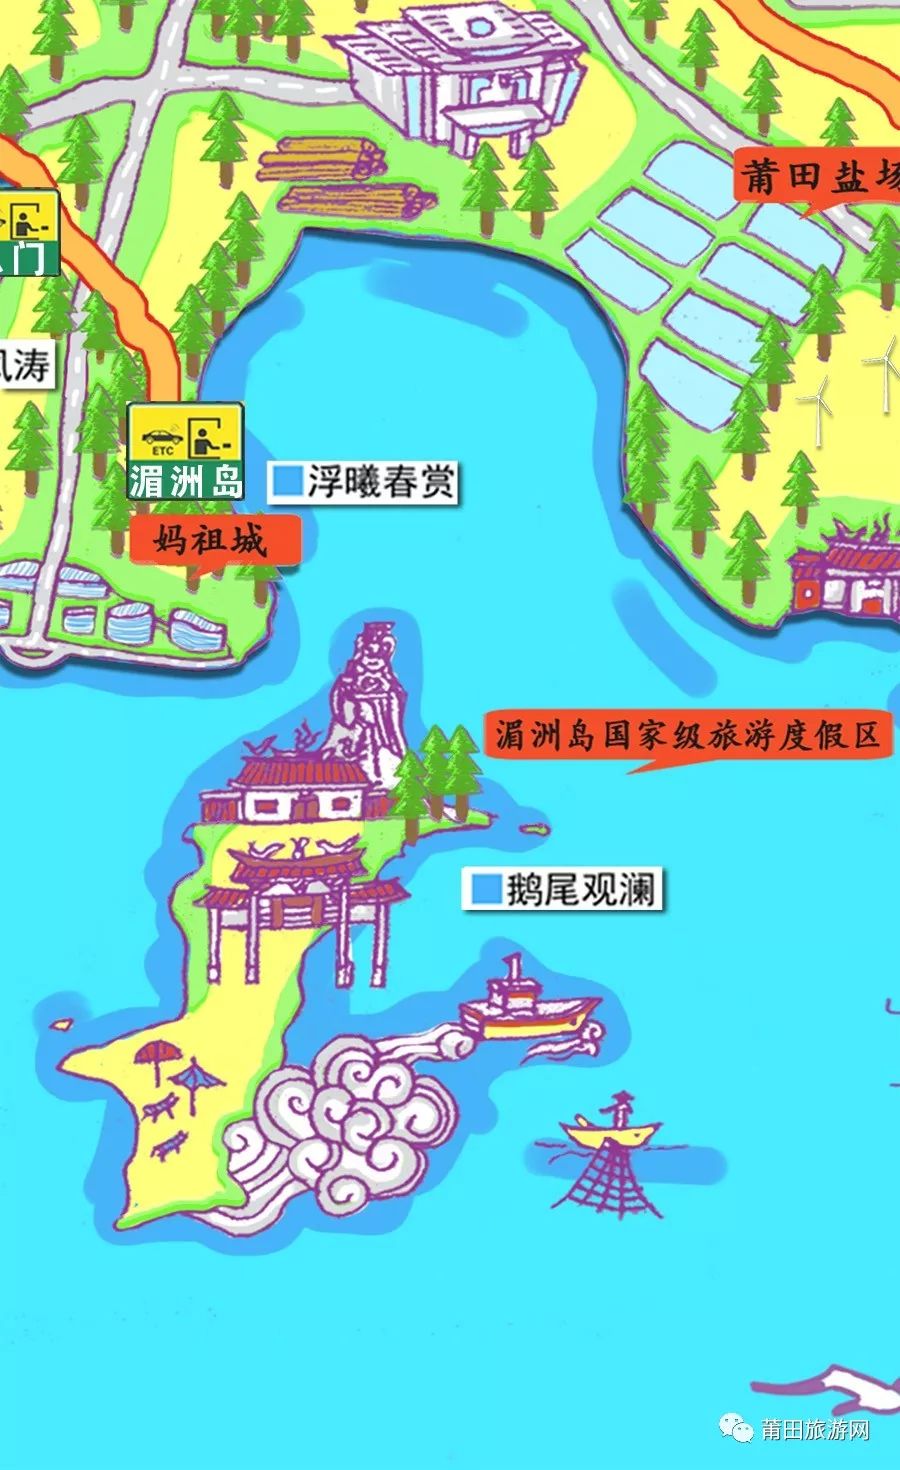 莆田新24景旅游手绘地图,你都走遍了吗?